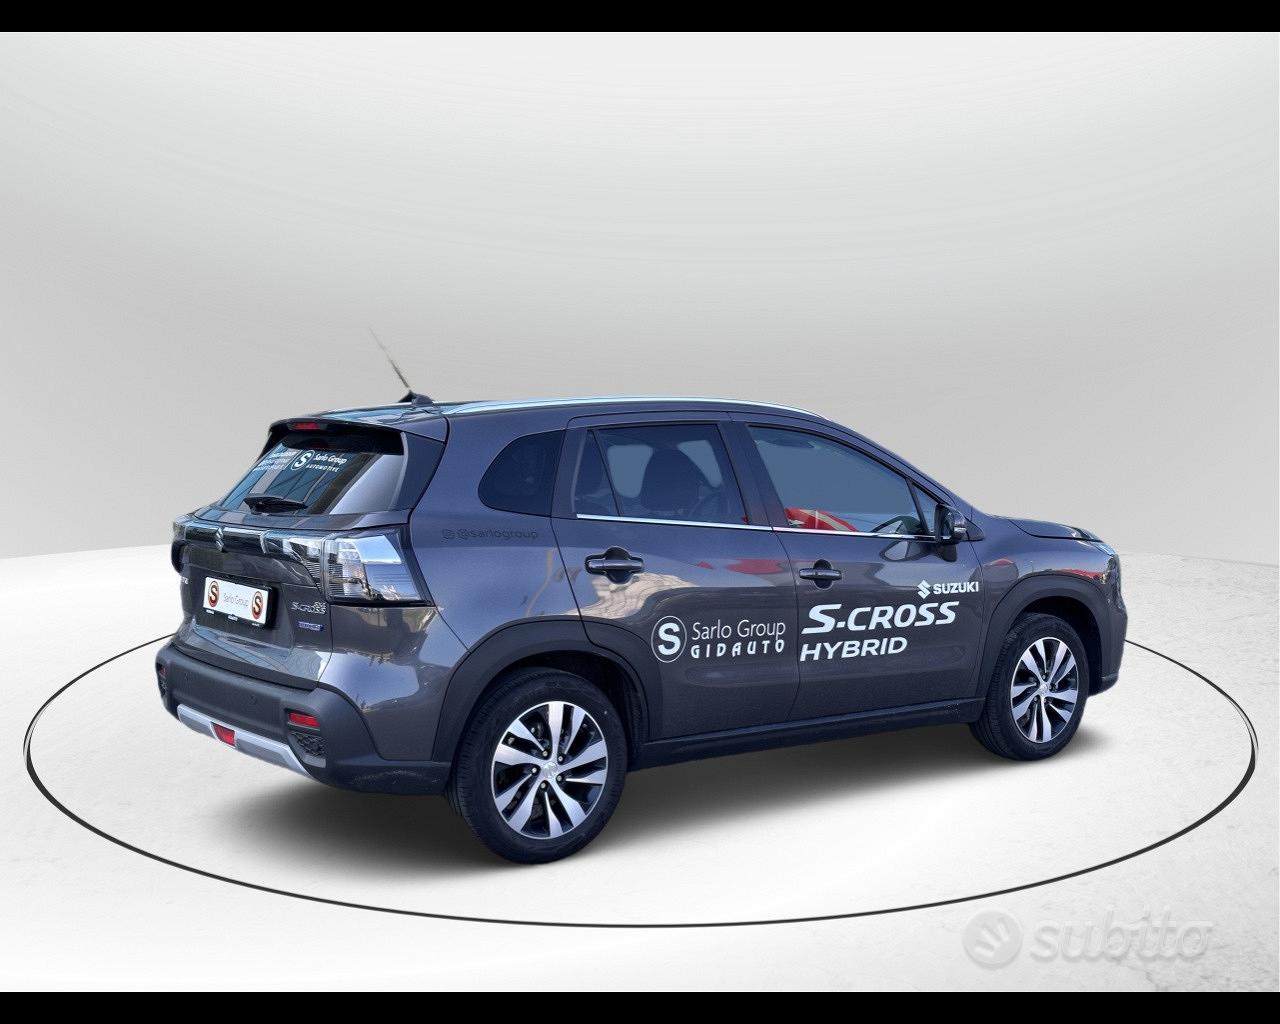 Concessionario ufficiale Suzuki - Sarlo Group